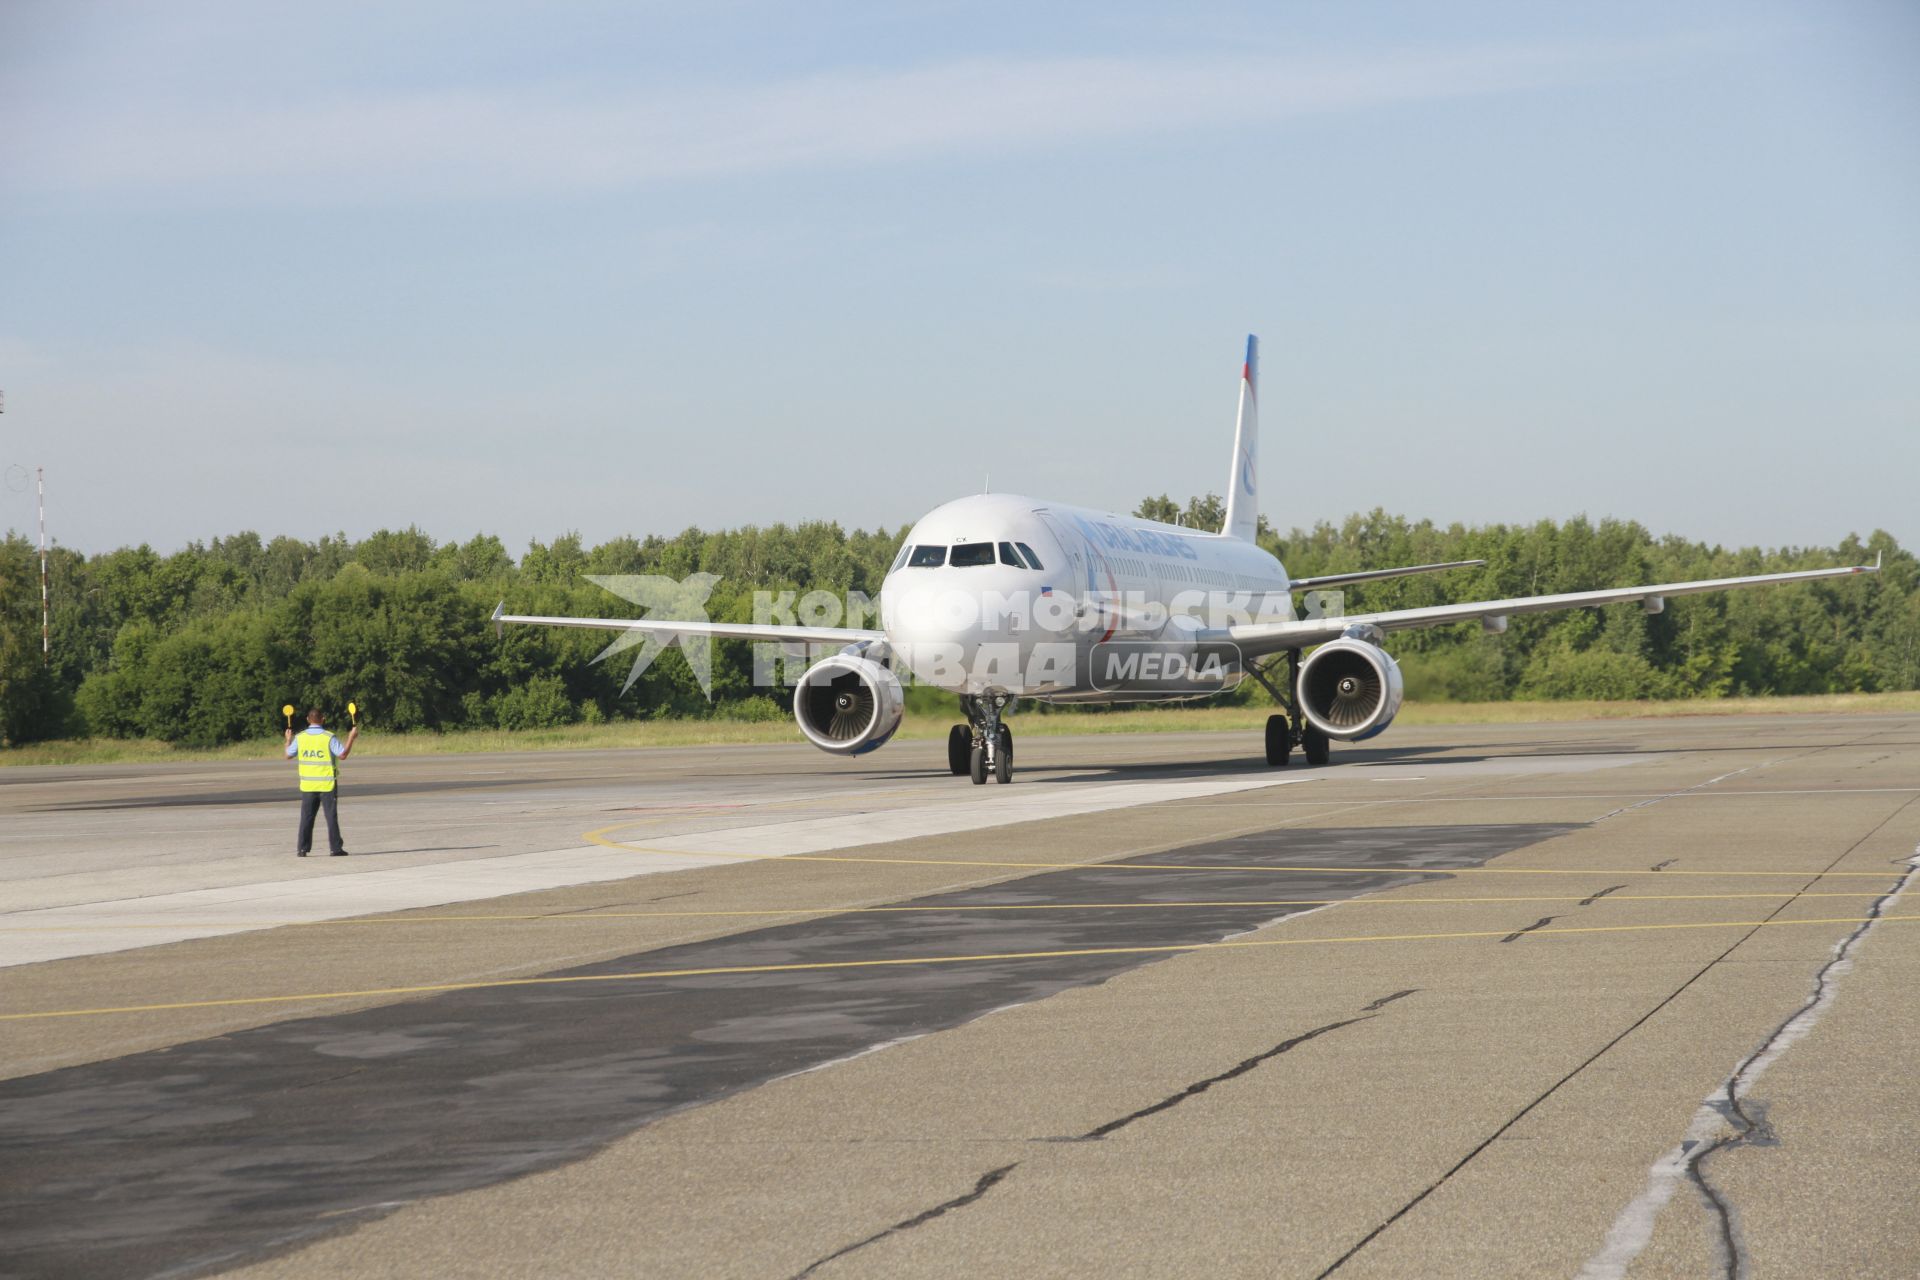 Барнаул. Самолет Airbus A321 российской авиакомпании Ural Airlines во время рулежки по взлетной полосе в барнаульском аэропорту.